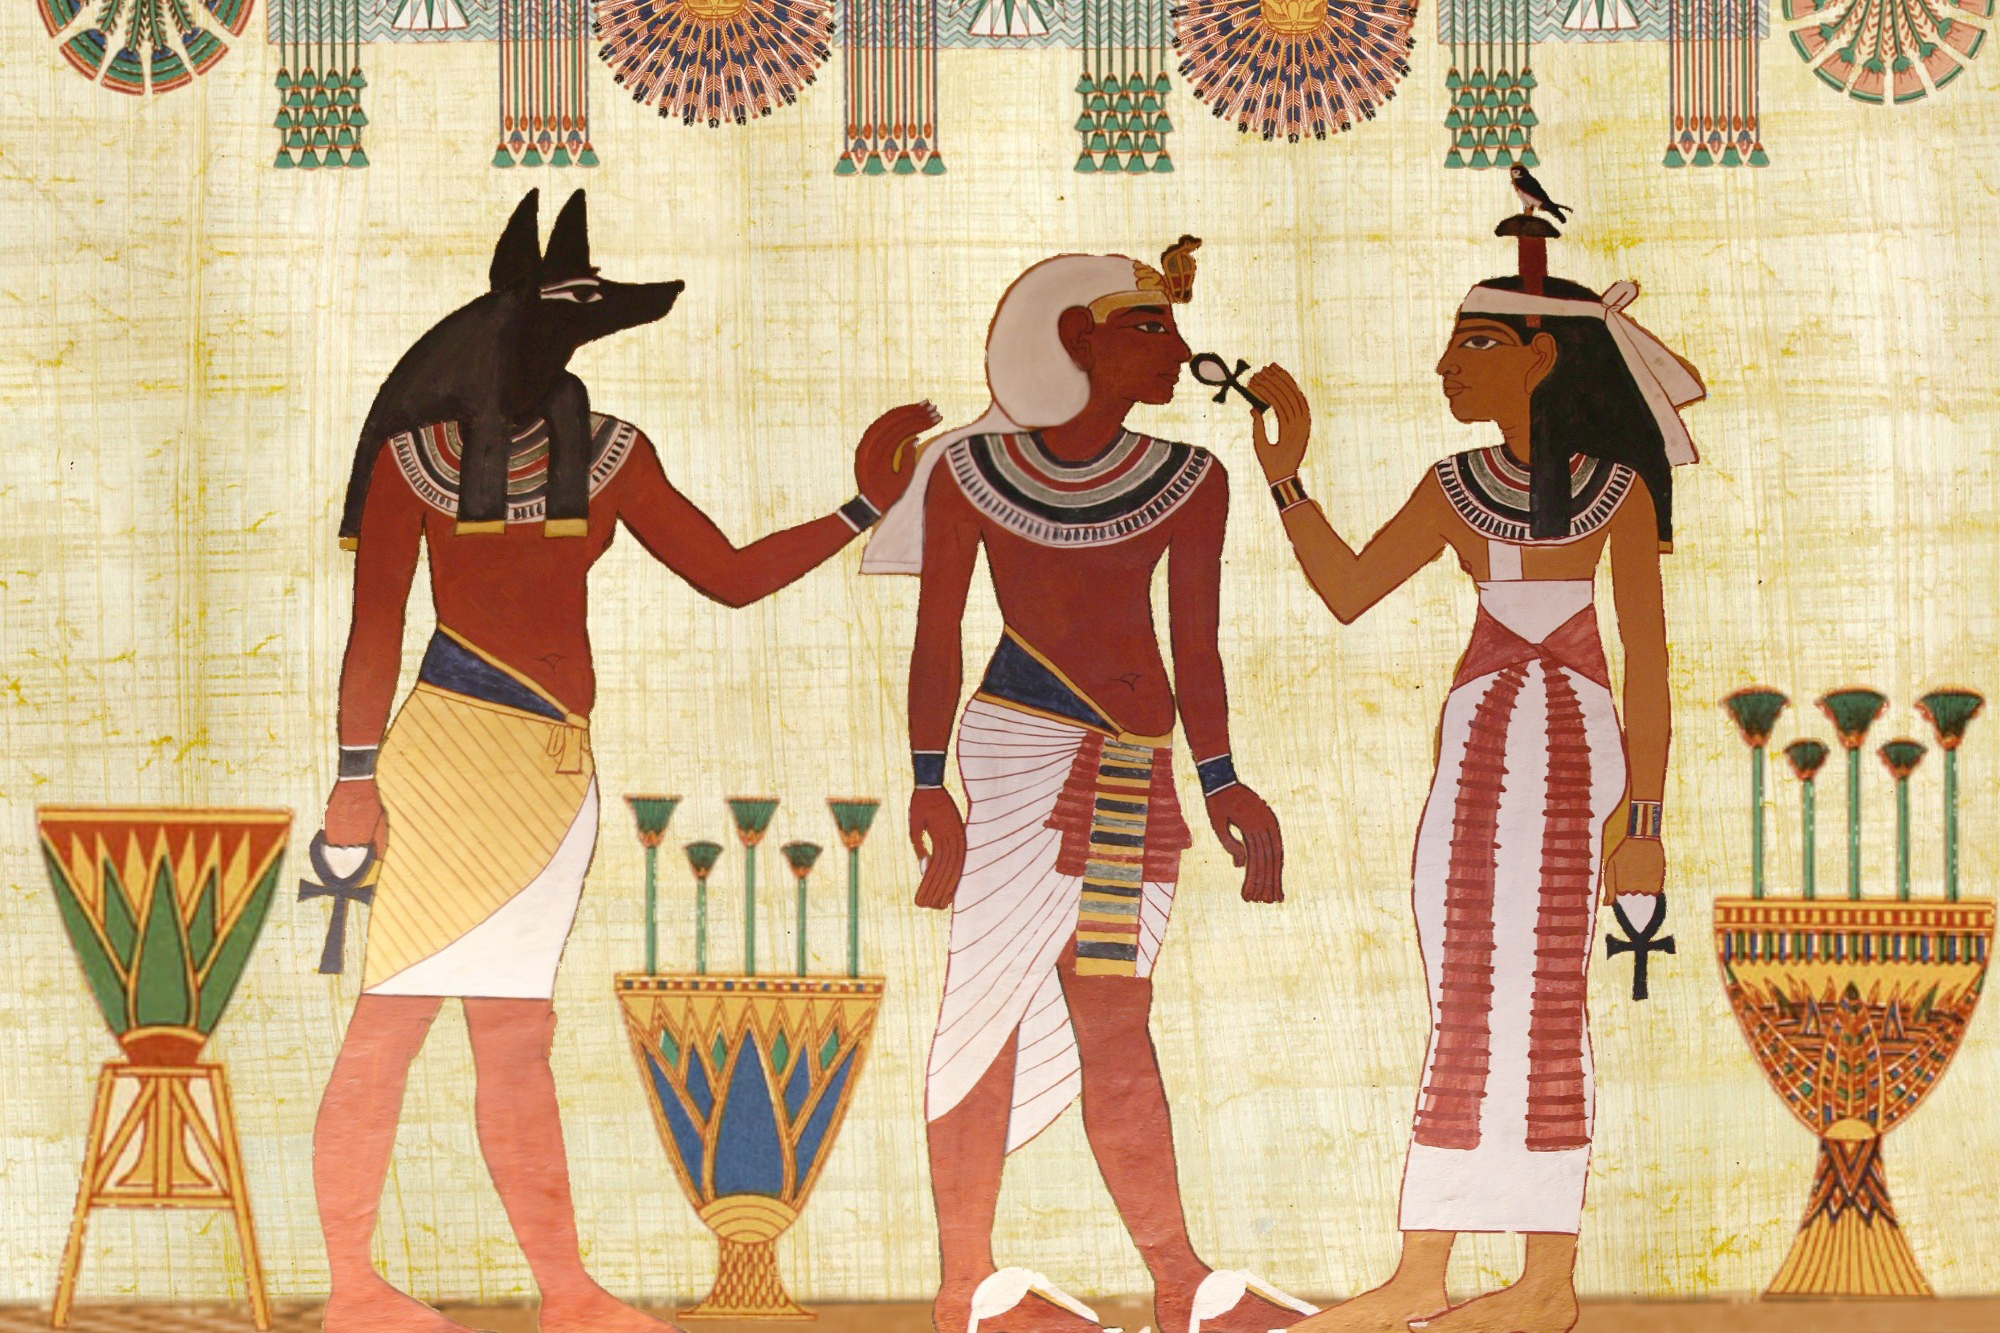 Leinenkleidung wurde von den Ägyptern als kühles Kleidungsstück getragen